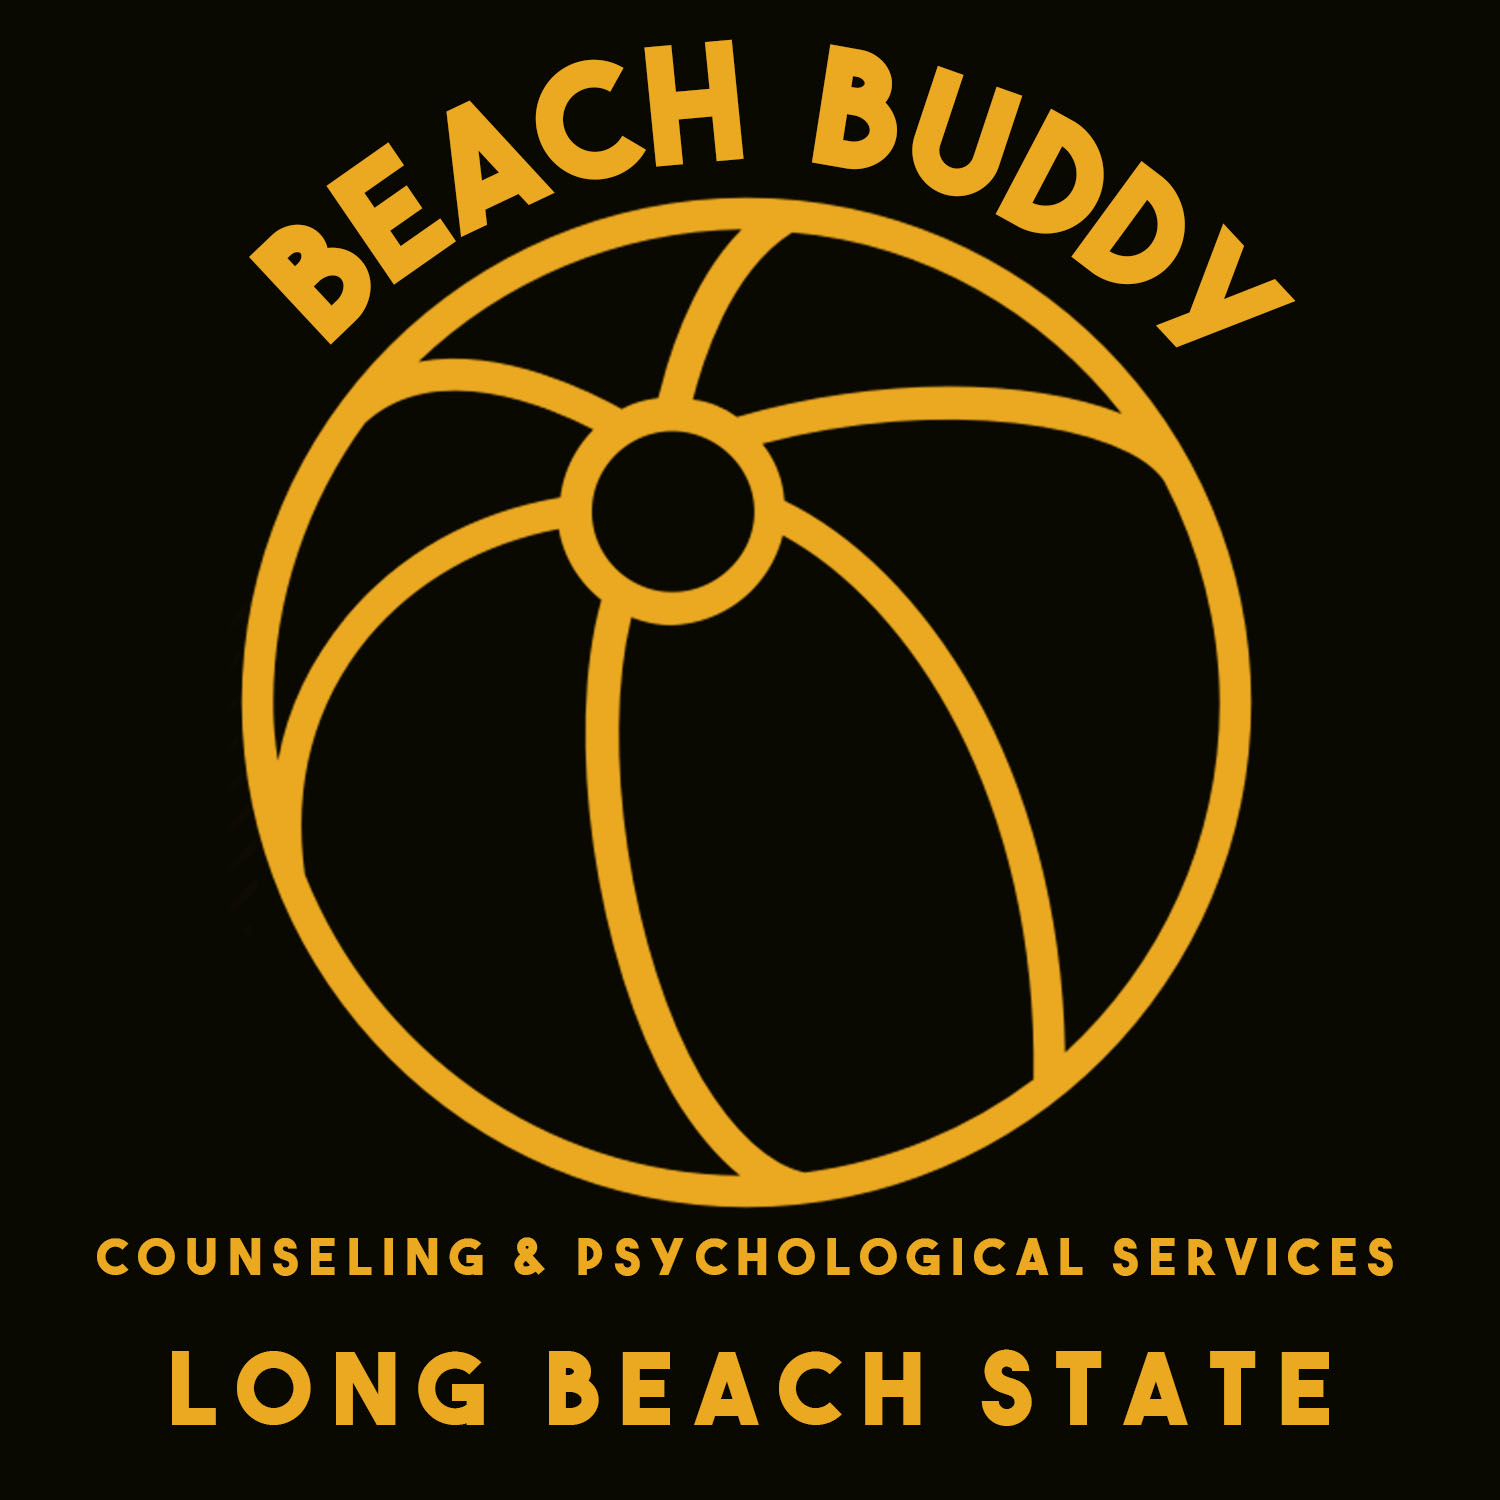 beach buddies logo